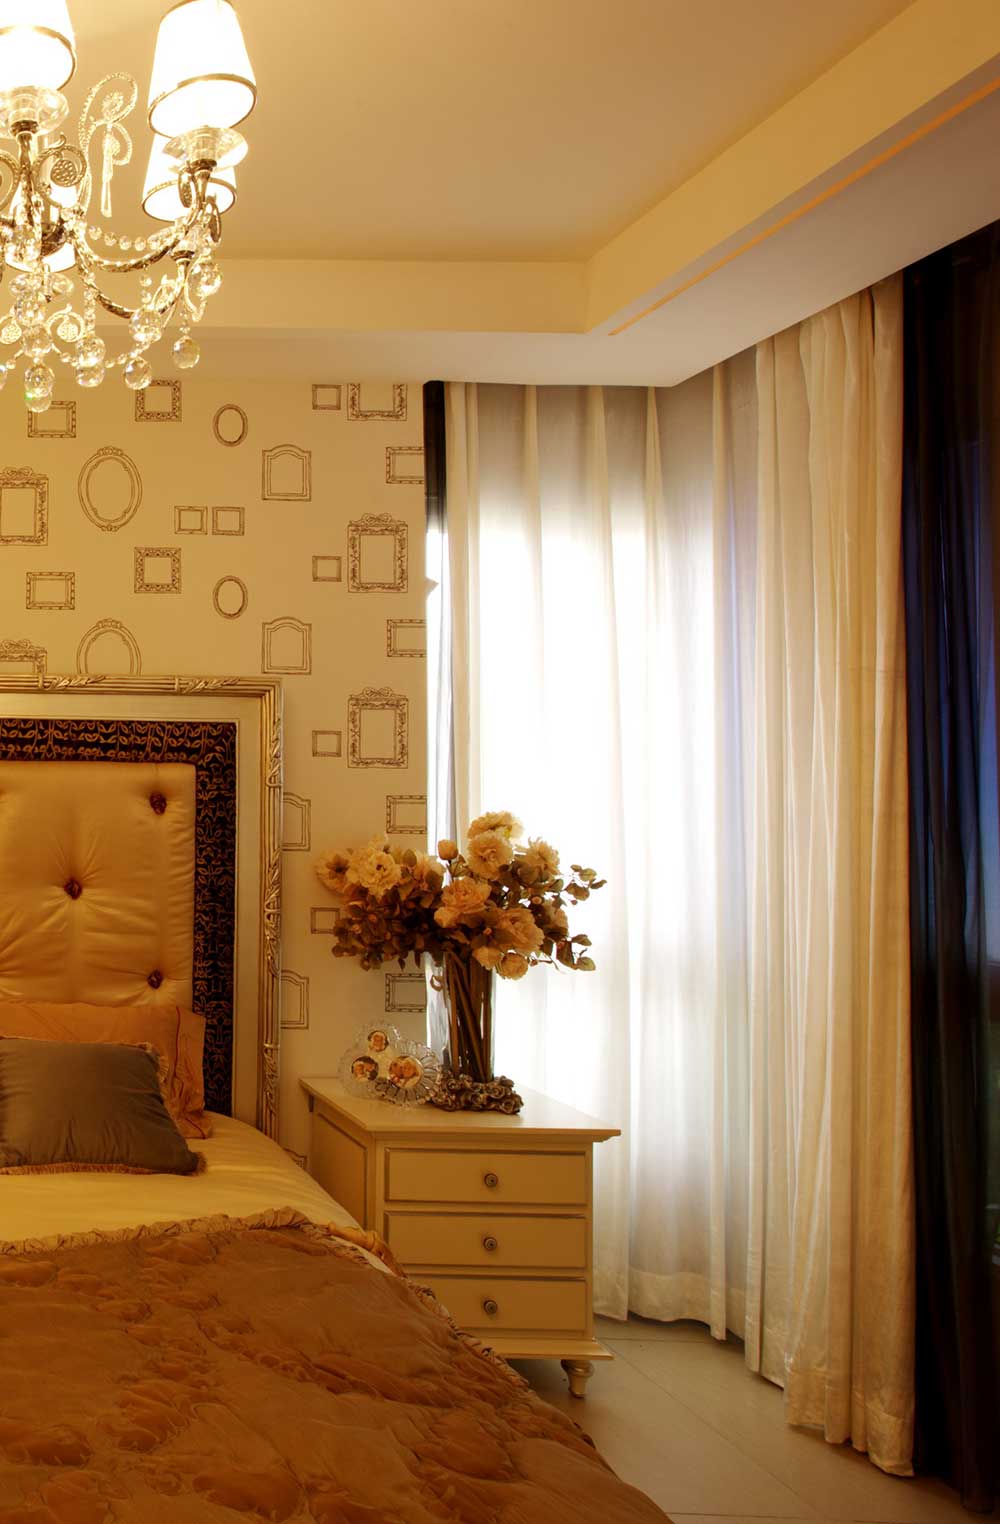 次卧装饰的简单一些，壁纸花纹很有现代感，窗帘白色的软布，飘逸轻盈，洁白无暇。